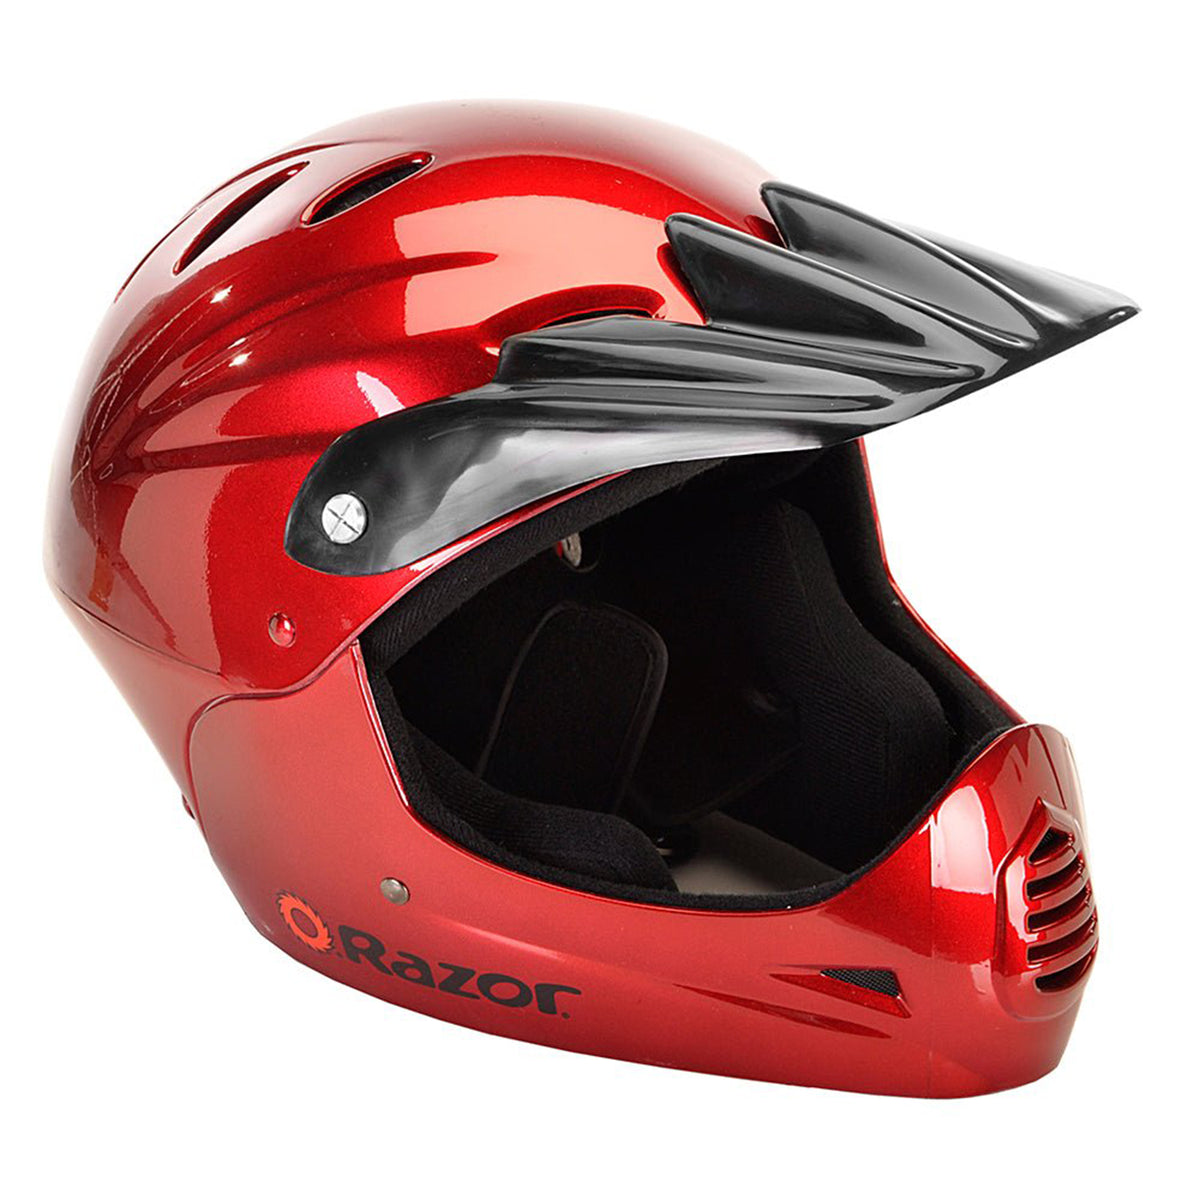 Razor® Full Face Youth Multi-Sport Helmet | Helmet for Kids Ages 8+